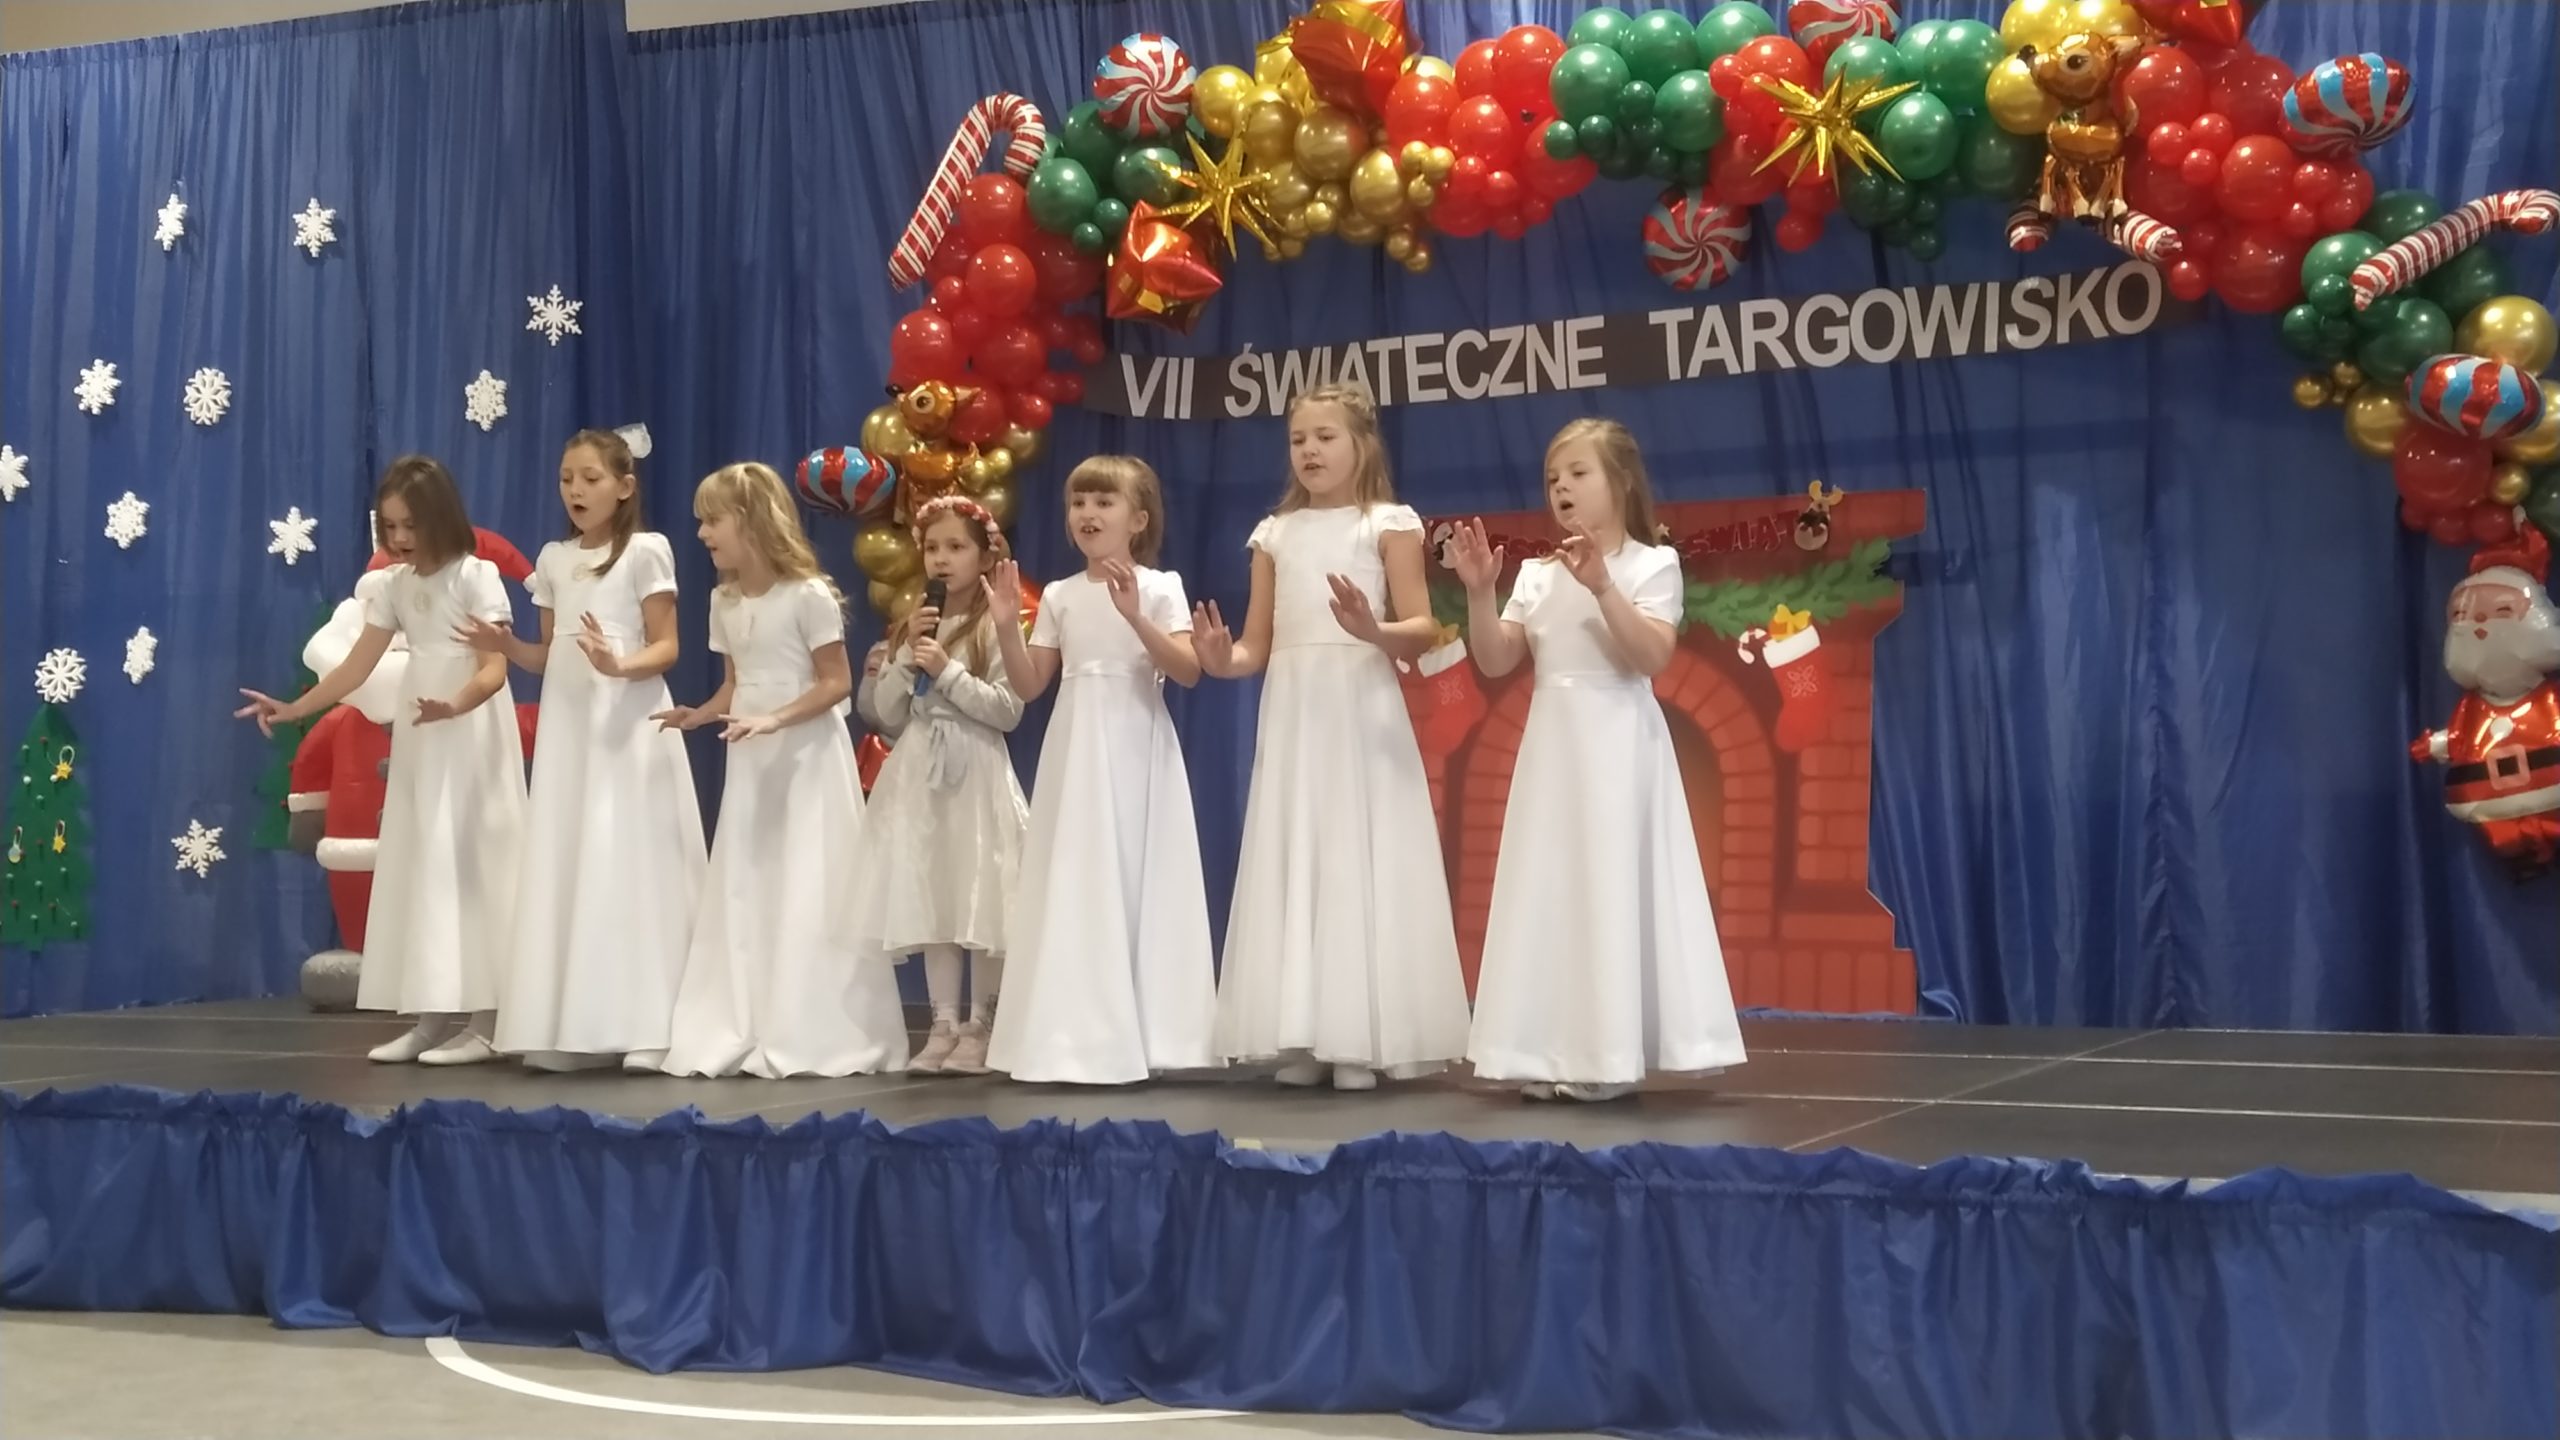 VII "Świąteczne Targowisko" w szkole w Gliniance. Występy artystyczne dziewcząt w białych sukienkach